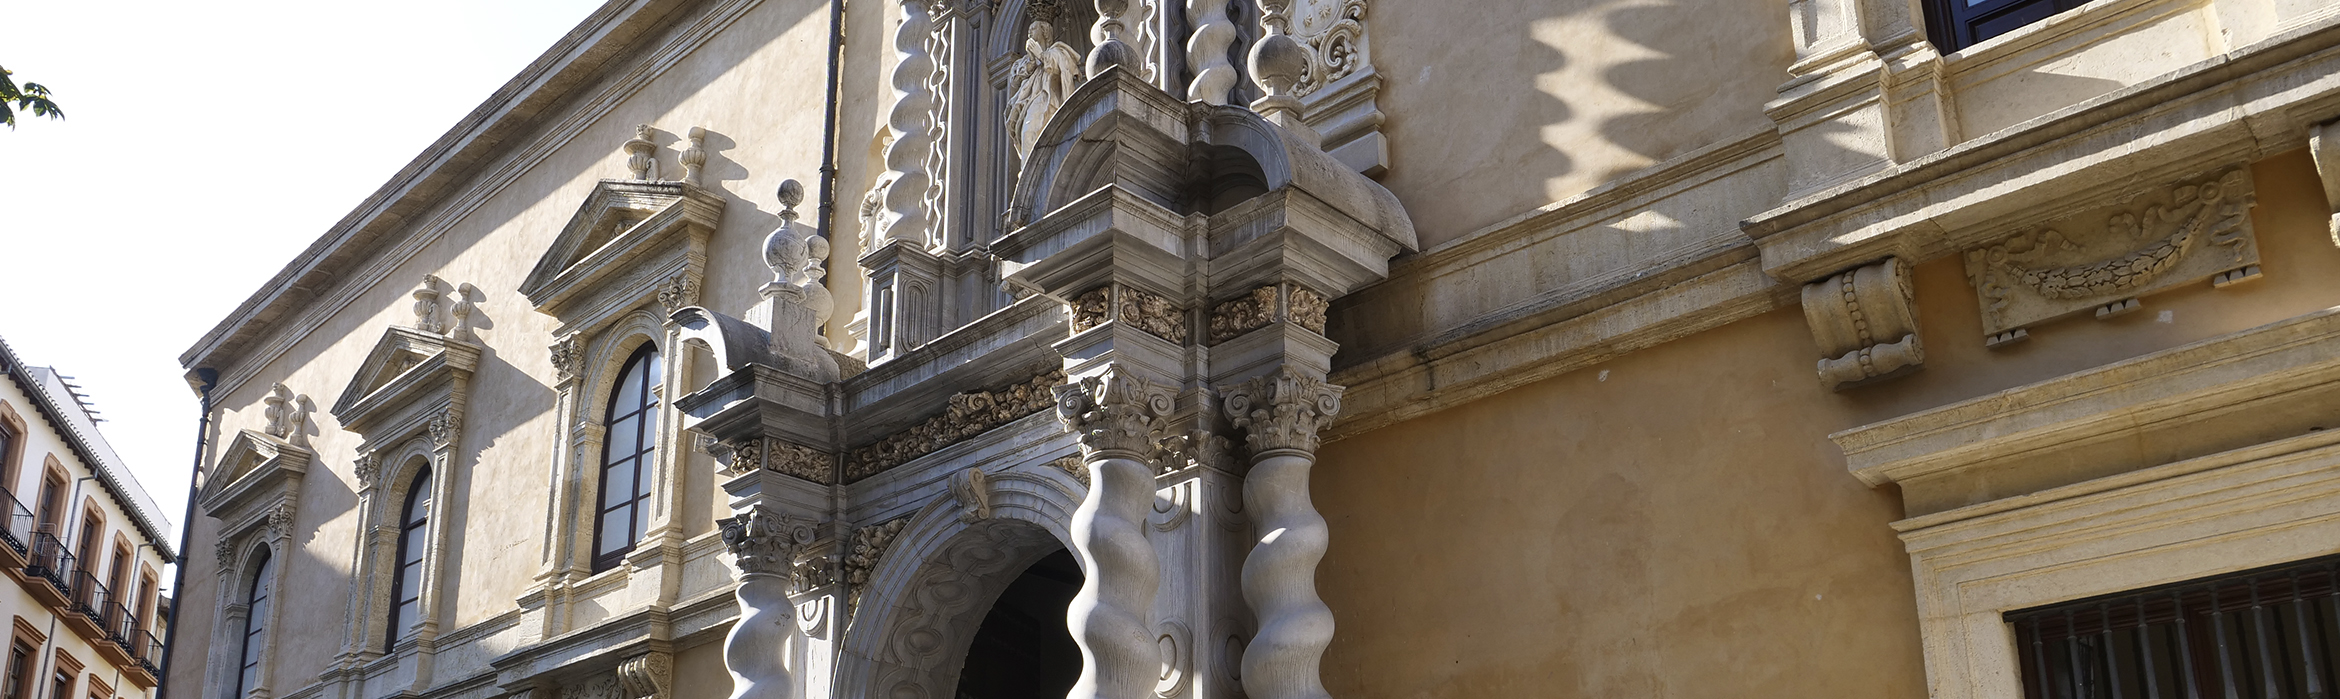 Arco de entrada a la Facultad de Derecho, su fachada exterior se encuentra reformada y cuenta con una imagen religiosa en la parte superior